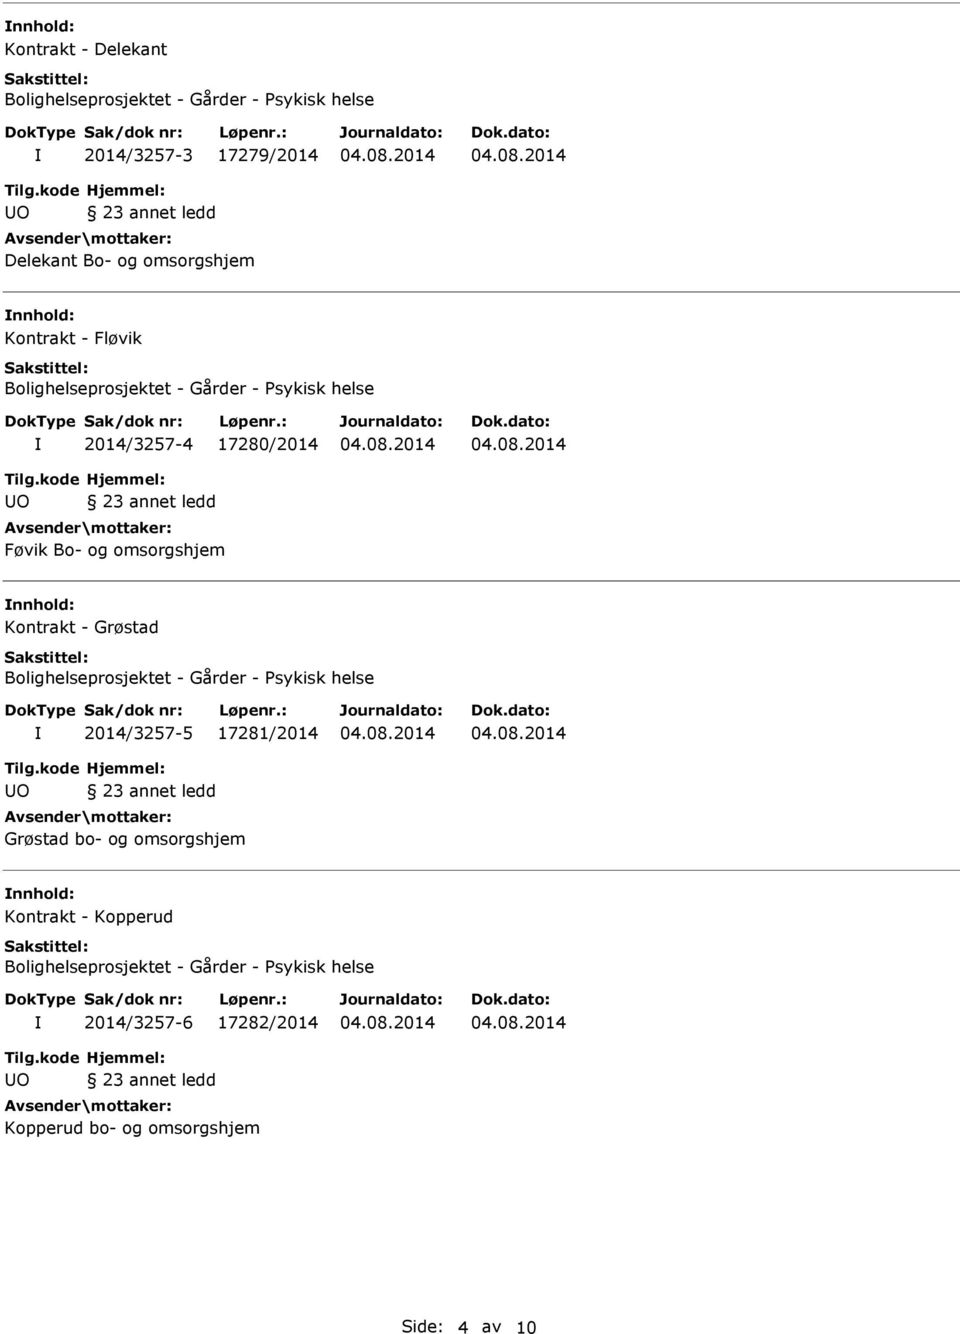 nnhold: Kontrakt - Grøstad 2014/3257-5 17281/2014 Grøstad bo- og omsorgshjem